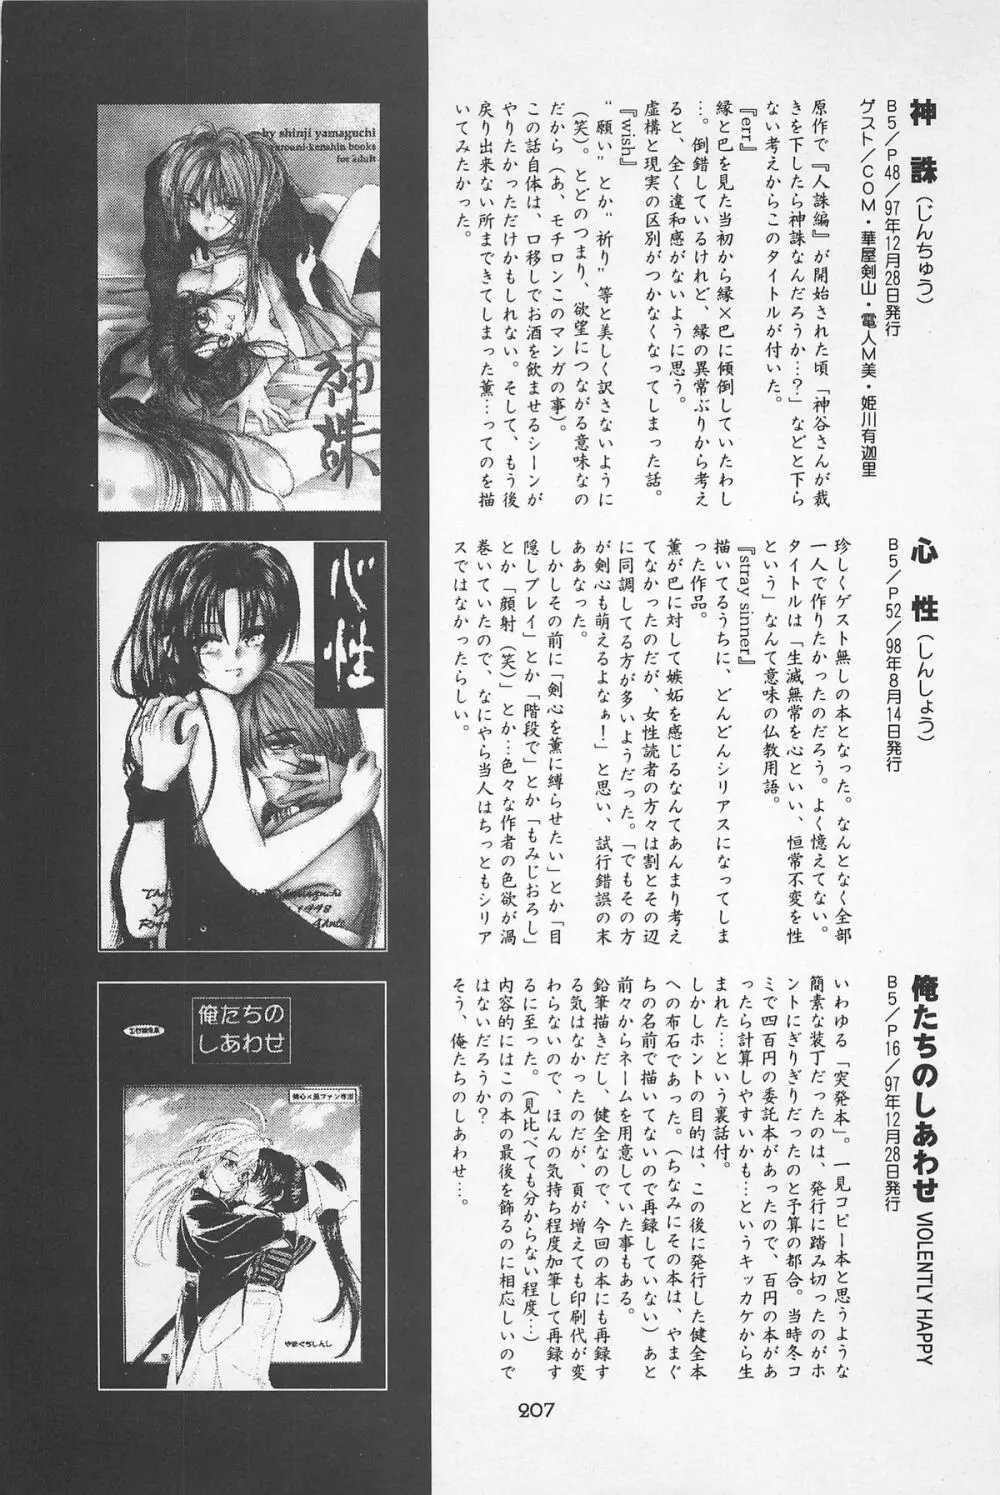 禁忌Ⅱ THE WORKS OF SHINJI YAMAGUCHI 207ページ